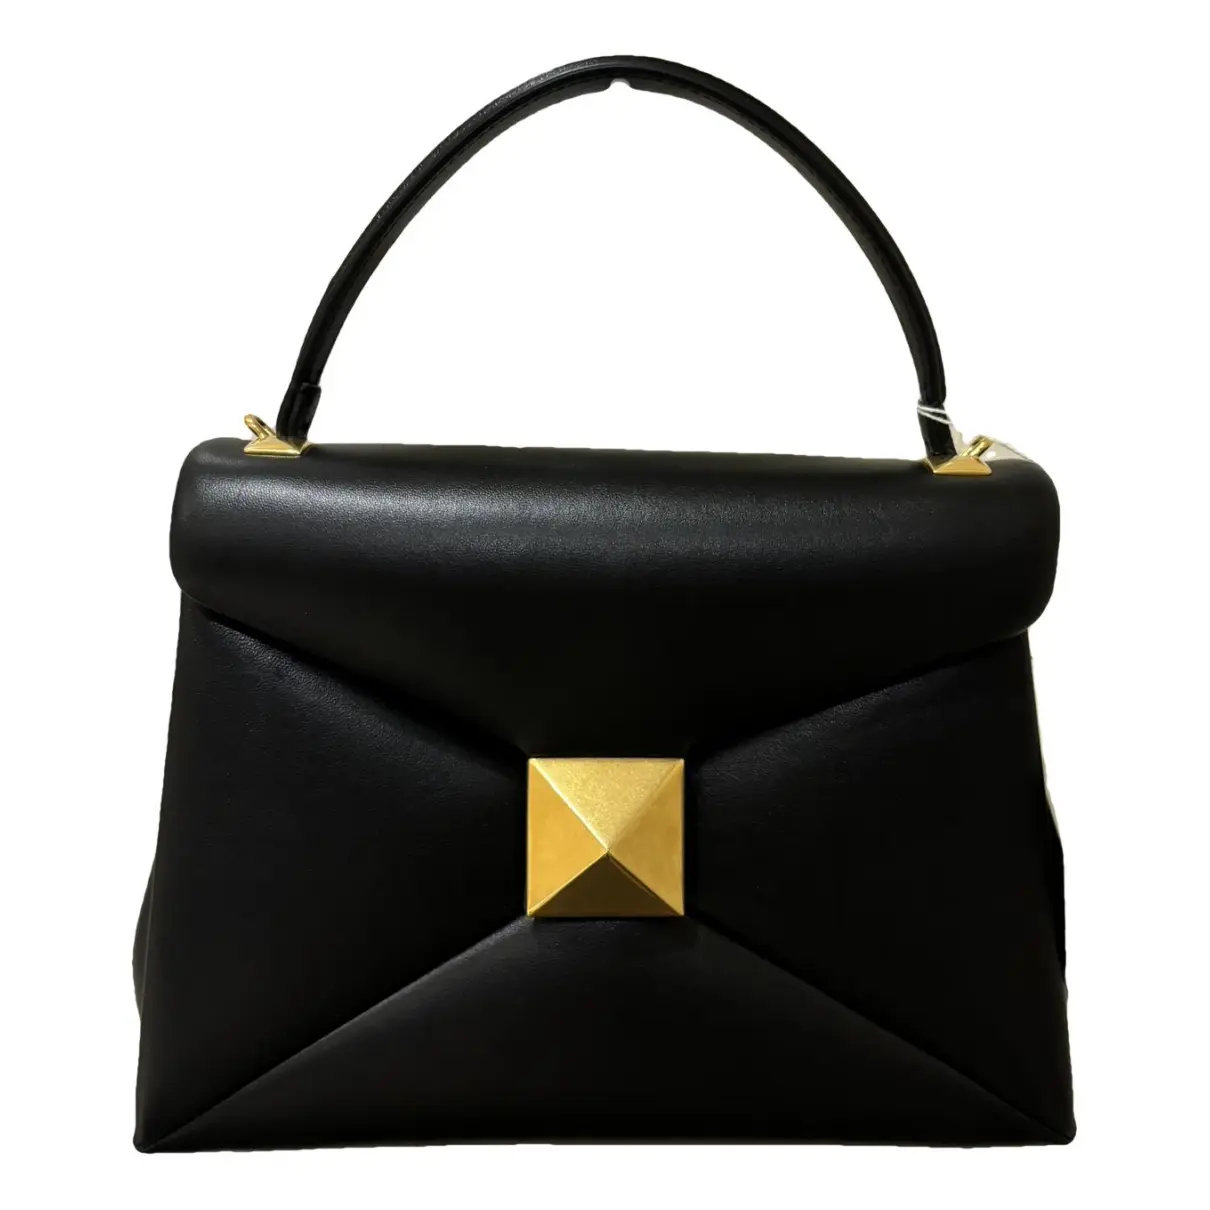 Roman Stud leather handbag